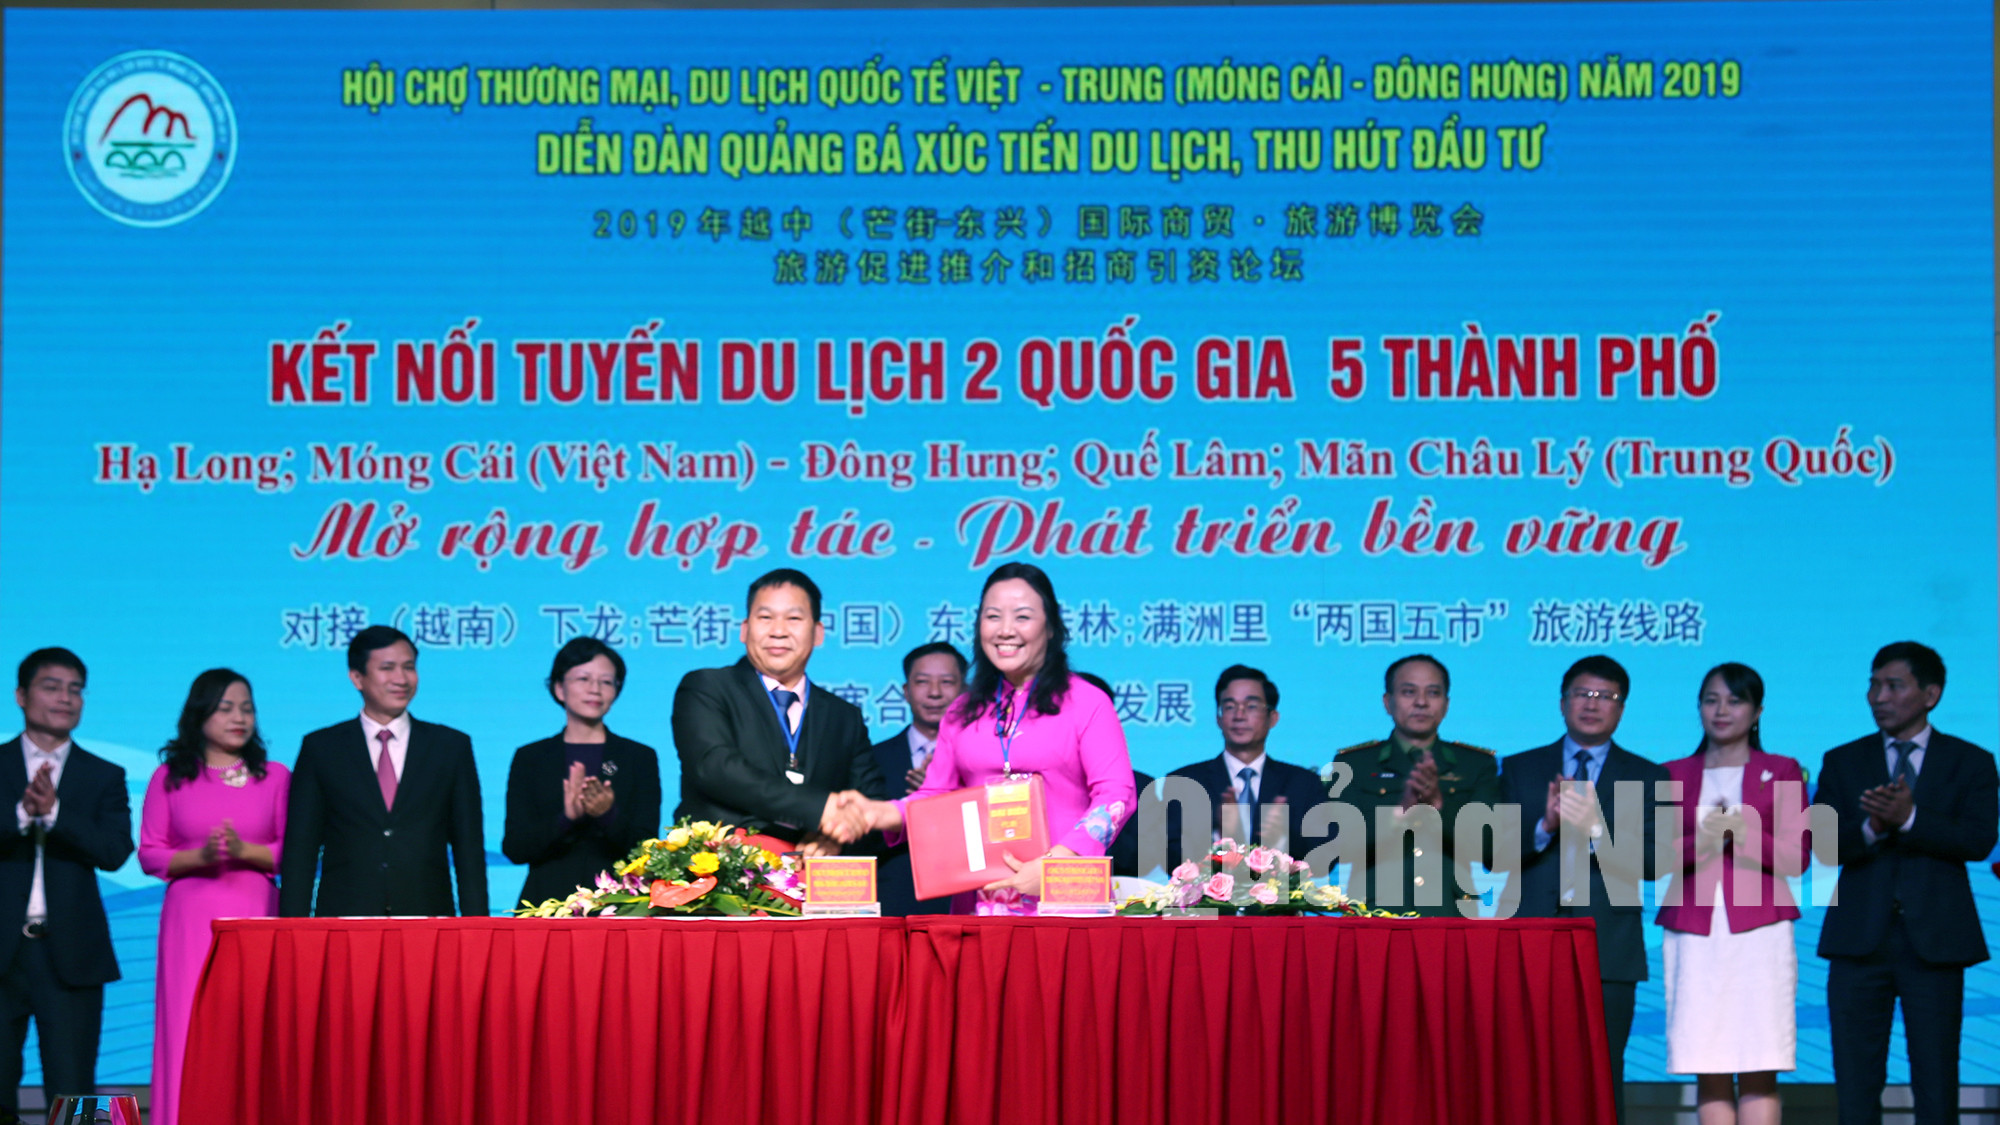 Các doanh nghiệp du lịch 2 địa phương Quảng Ninh (Việt Nam) và Quảng Tây (Trung Quốc) ký kết các hợp đồng trao đổi khách (12-2019). Ảnh: Hữu Việt